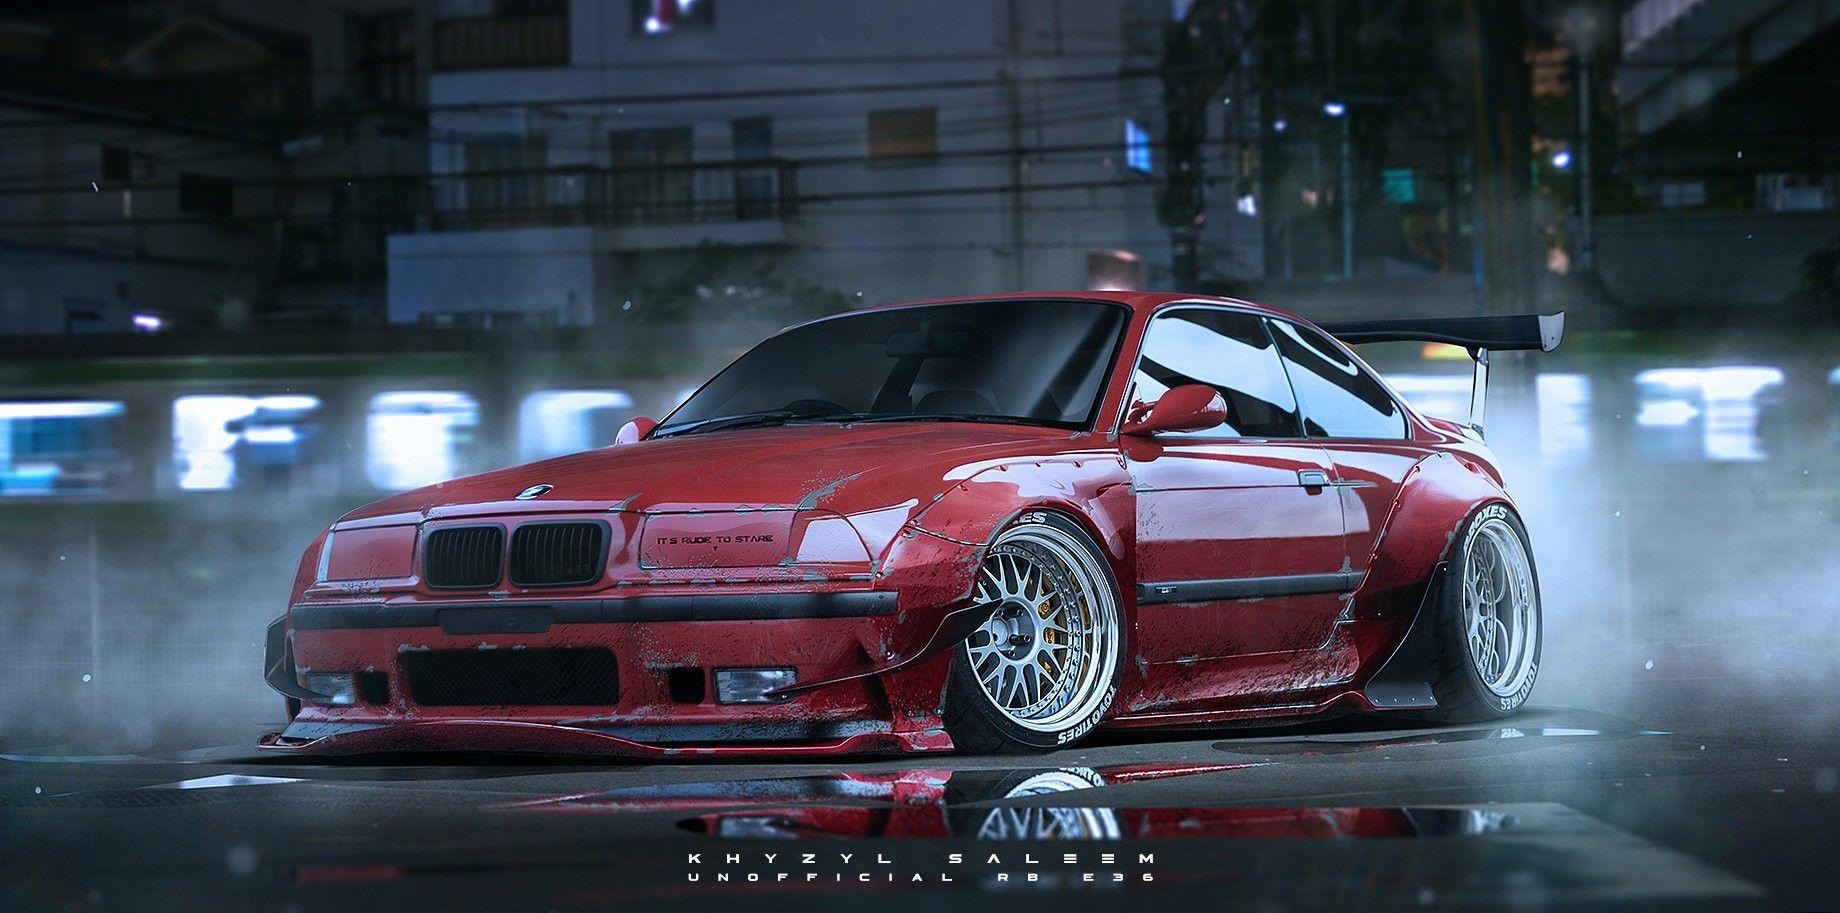 Wallpaper, render, artwork, Drifting, sports car, BBS, BMW E36